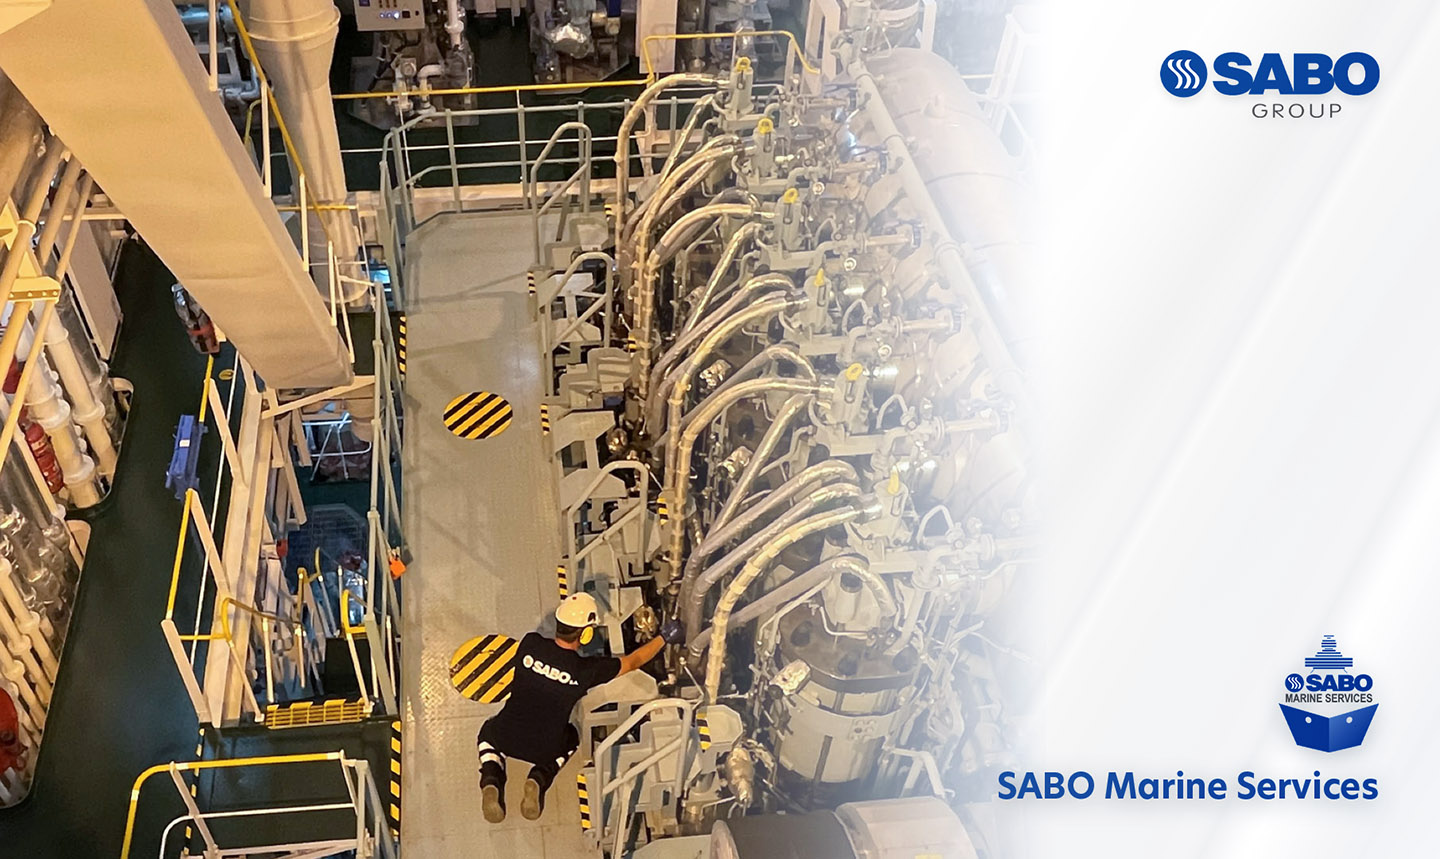 Η SABO Marine Services επεκτείνεται και εδραιώνεται στην αγορά των δεξαμενισμών